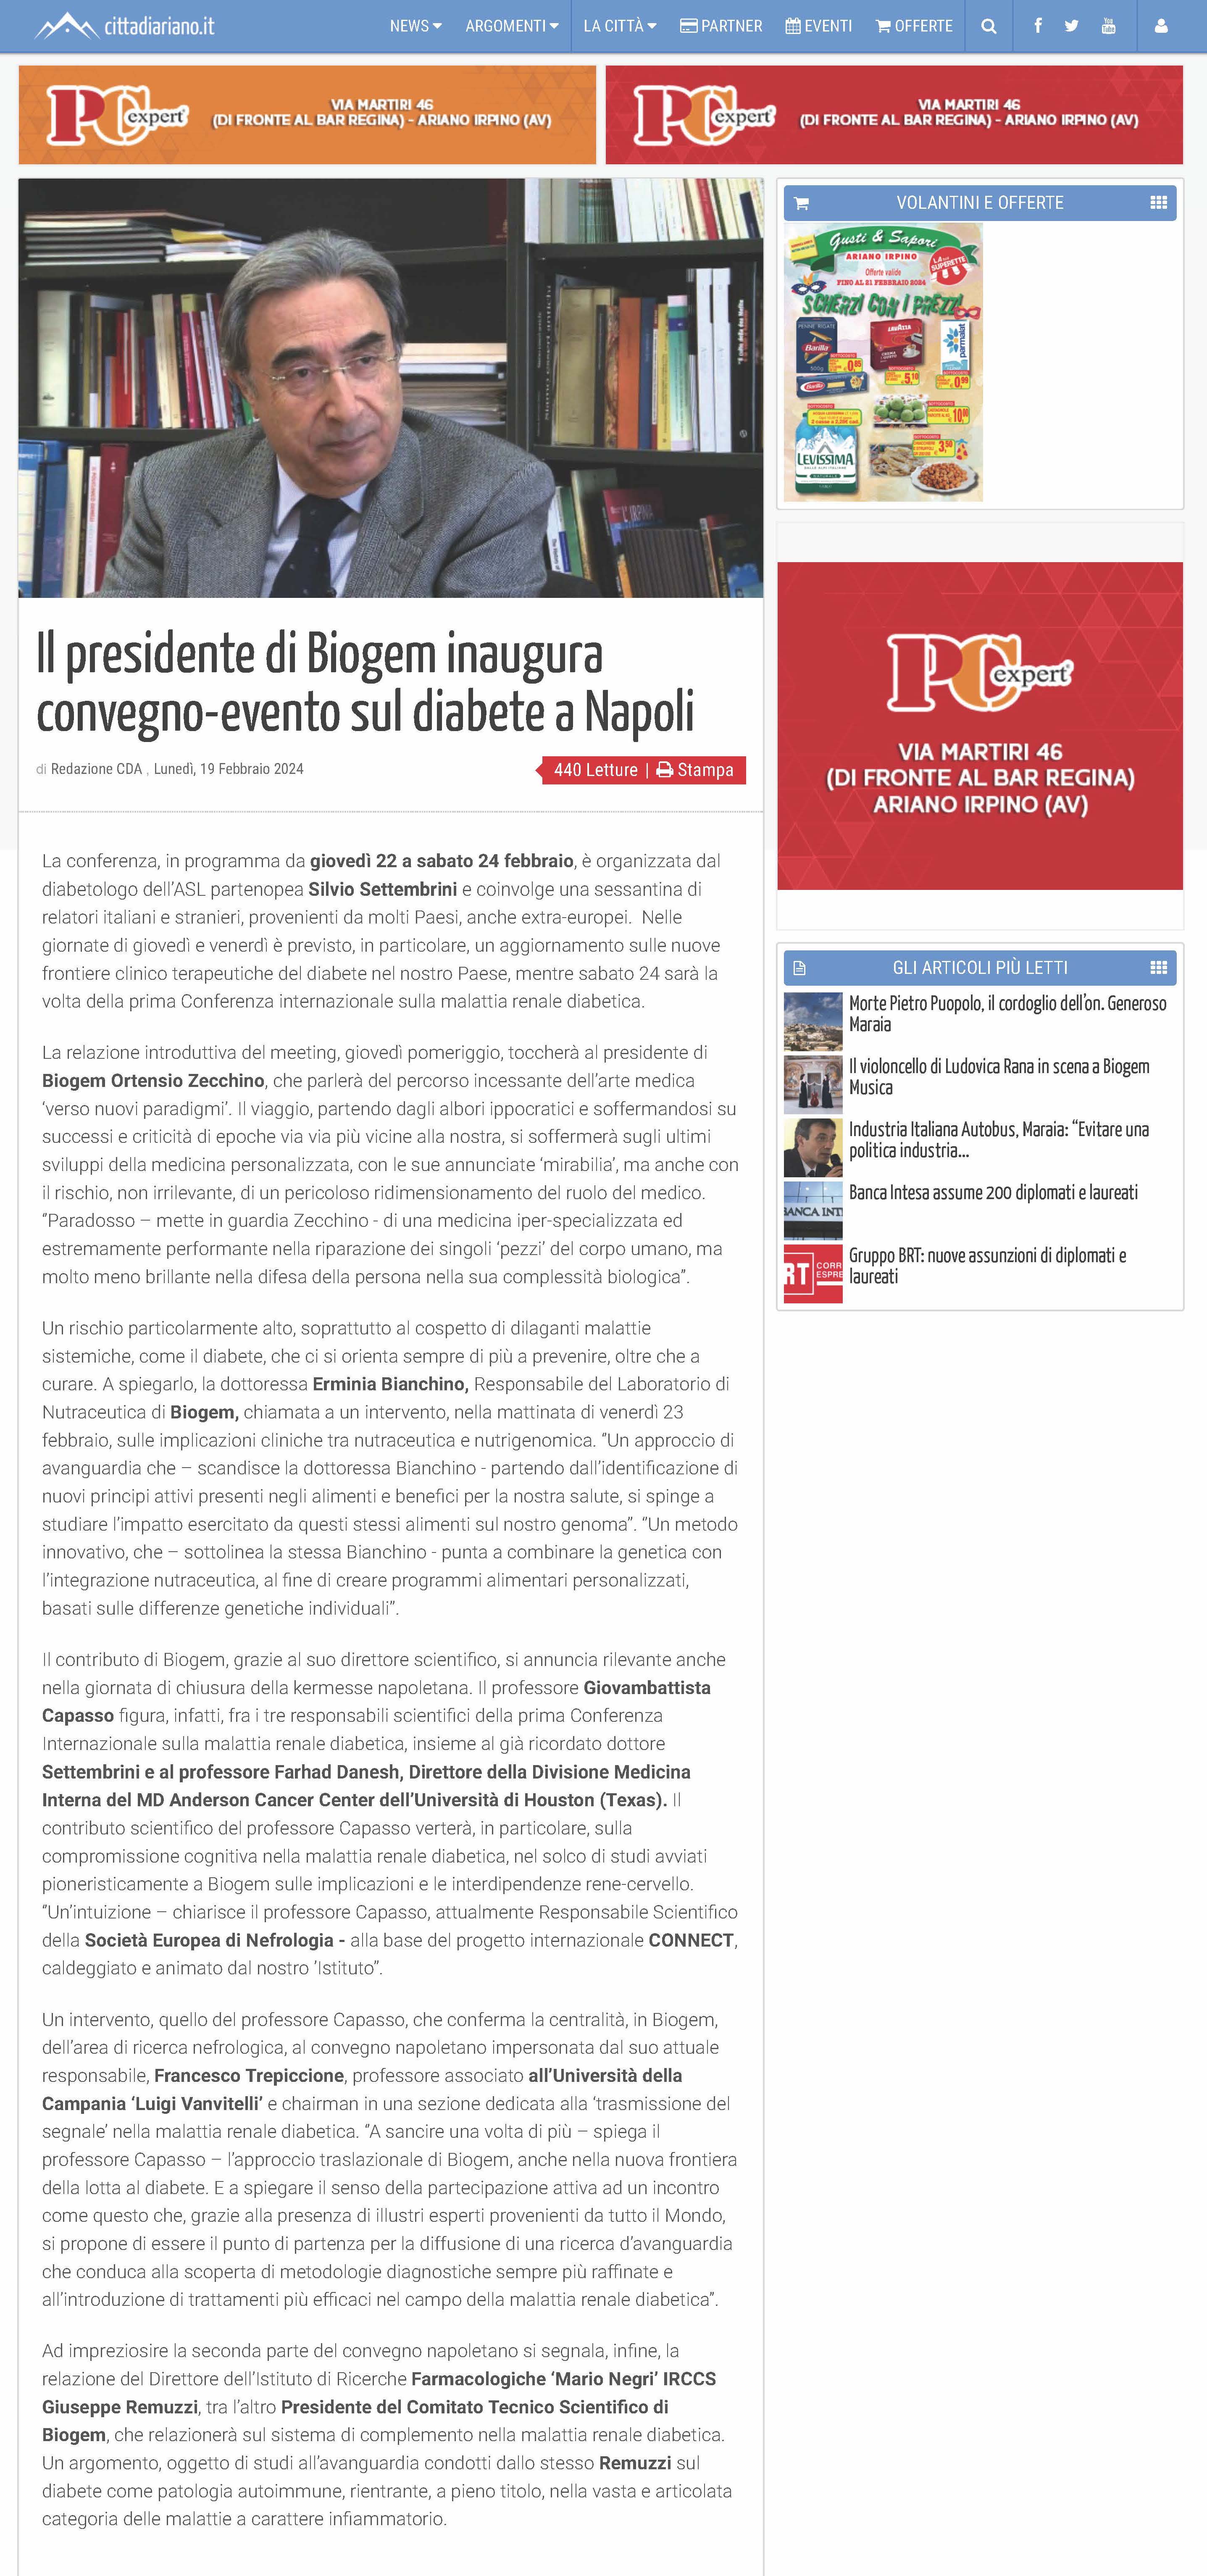 Il presidente di Biogem inaugura convegno-evento sul diabete a Napoli